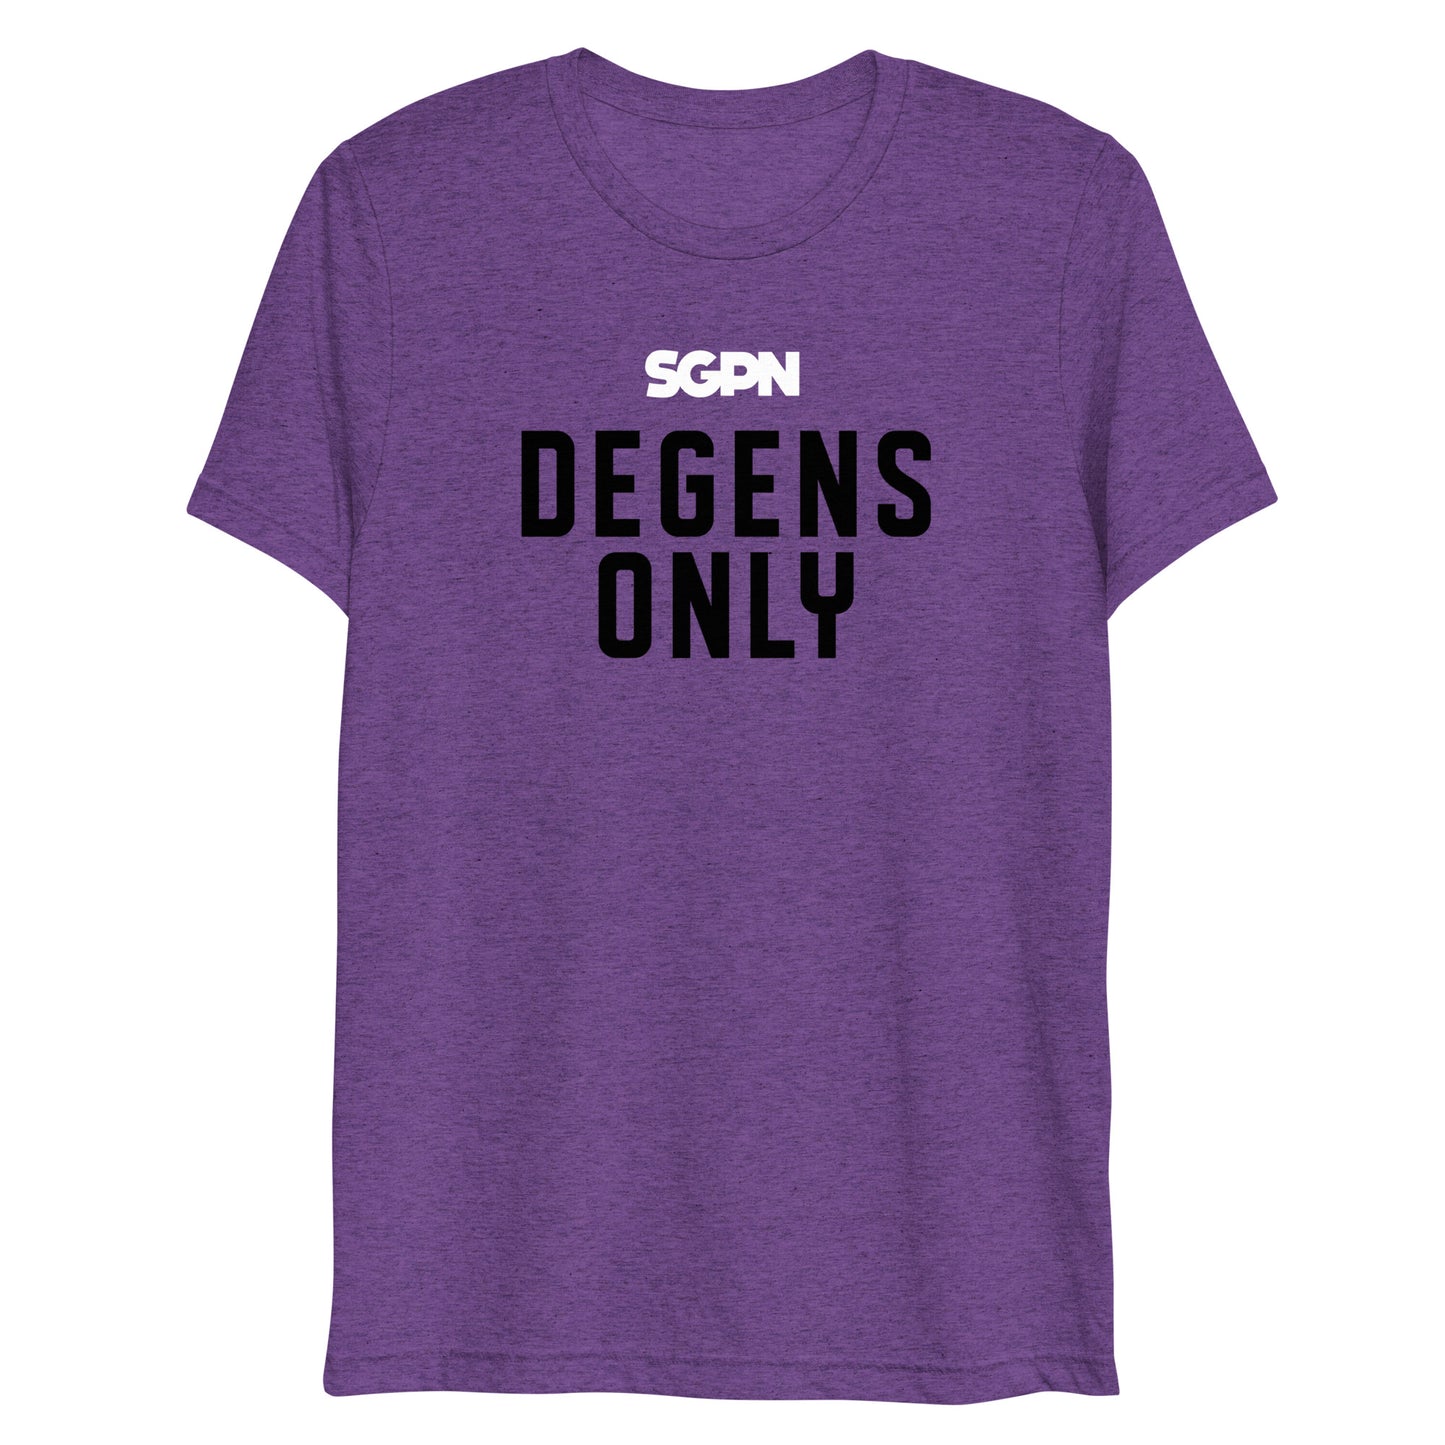 Degens Only - SGPN - Short sleeve t-shirt